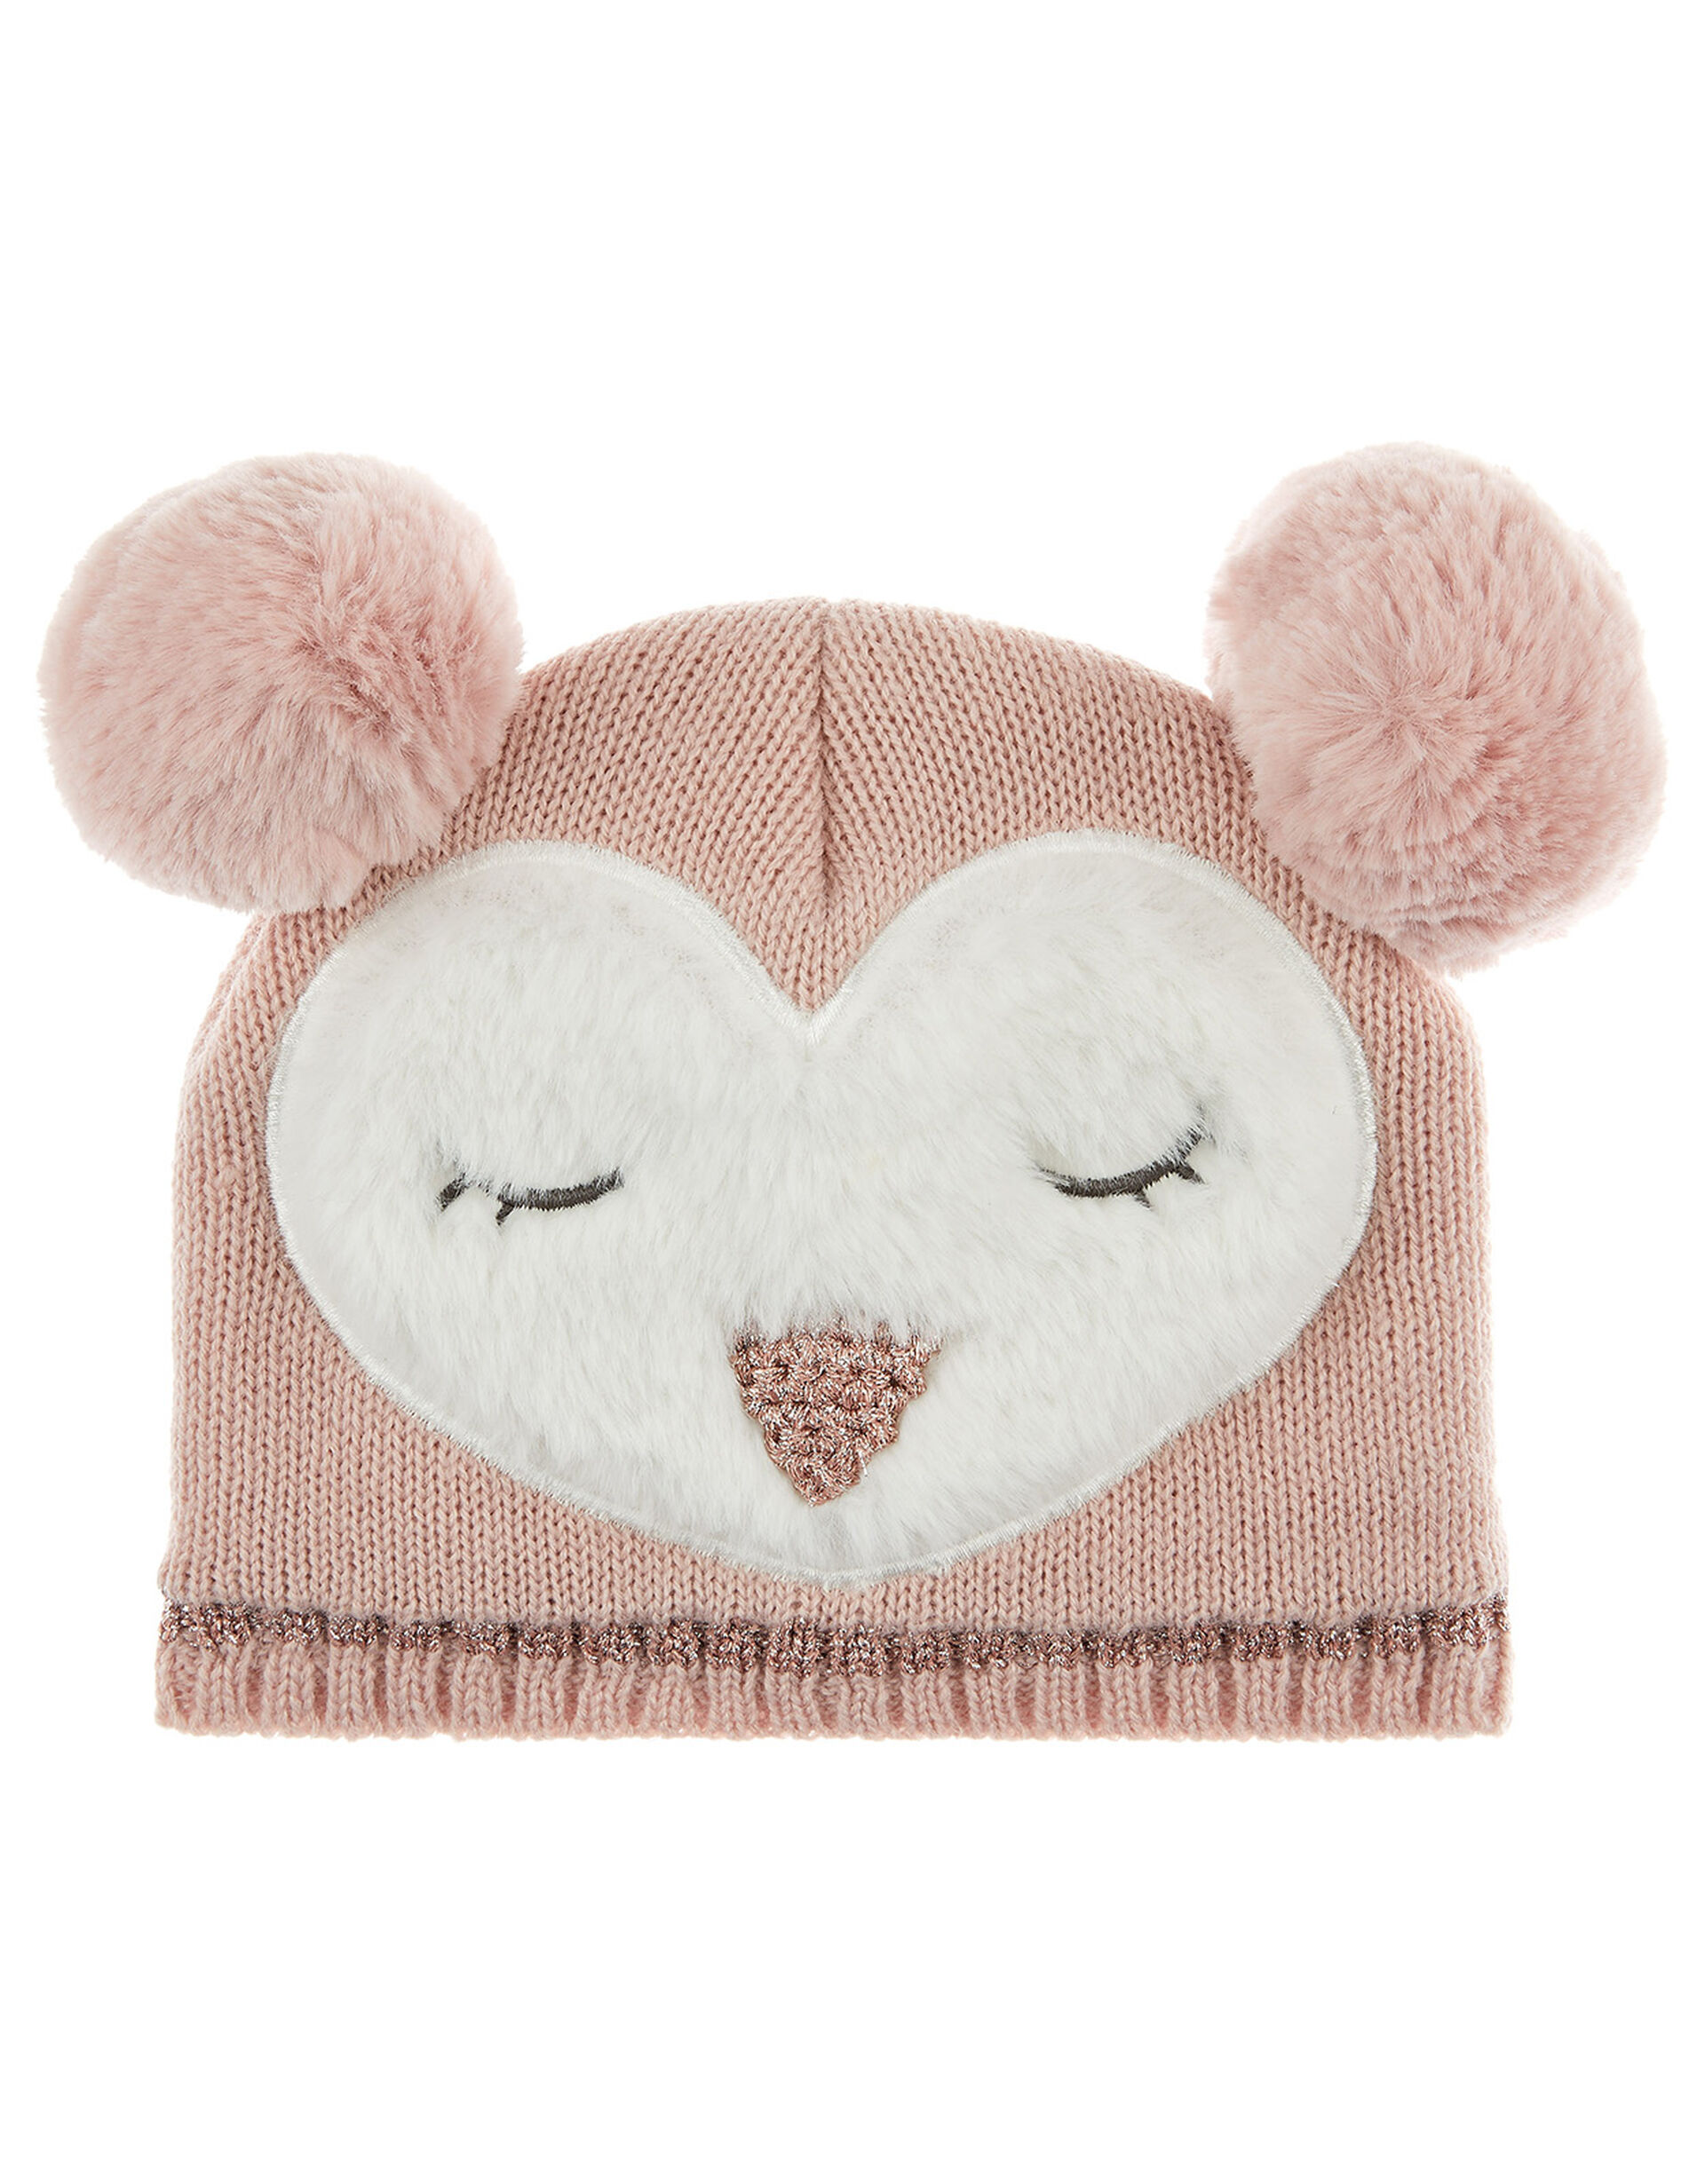 Baby Pom-Pom Owl Knit Beanie, Pink (PINK), large